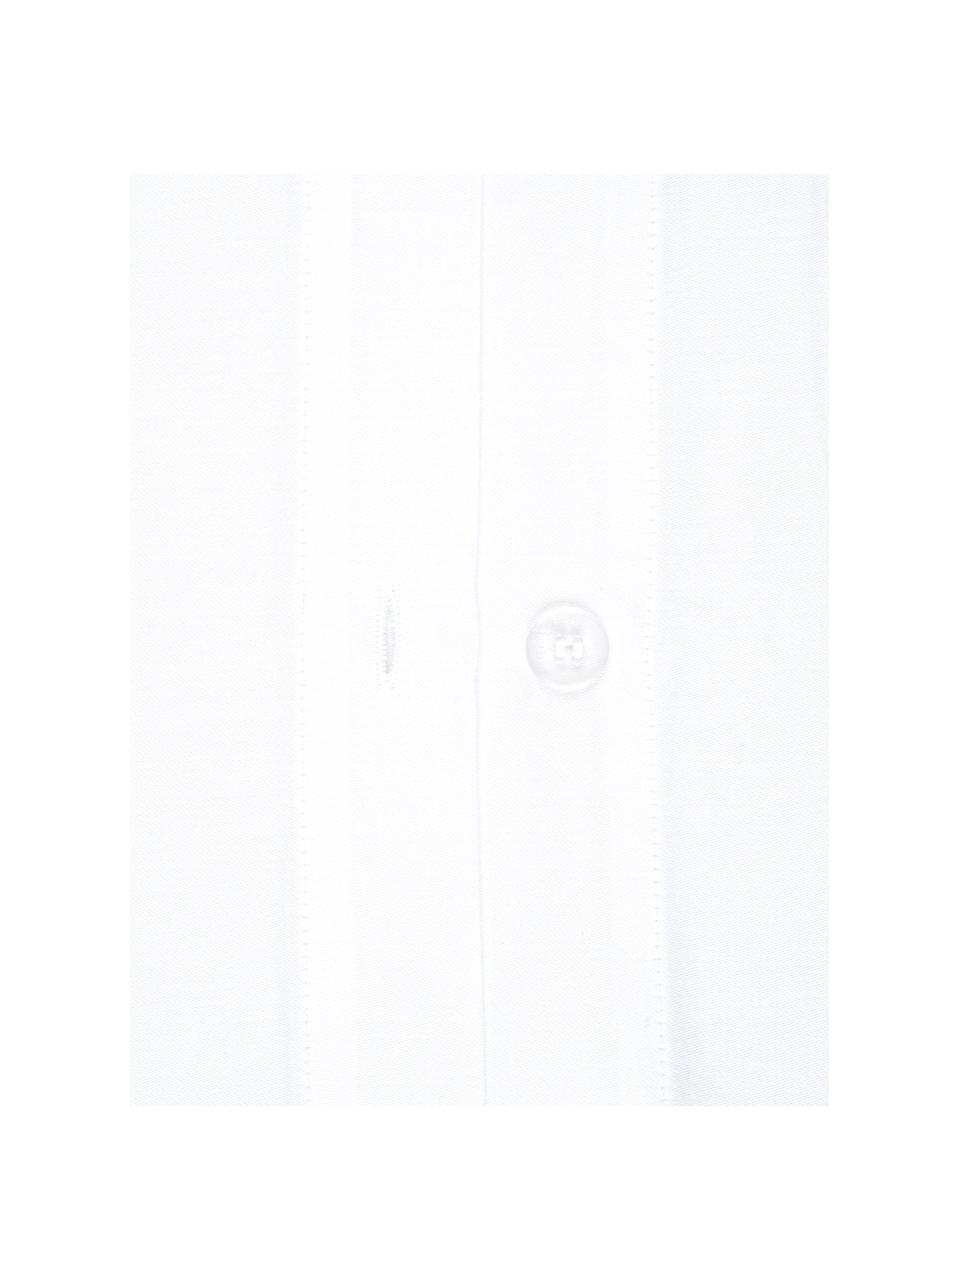 Pościel z satyny bawełnianej Comfort, Biały, 135 x 200 cm + 1 poduszka 80 x 80 cm